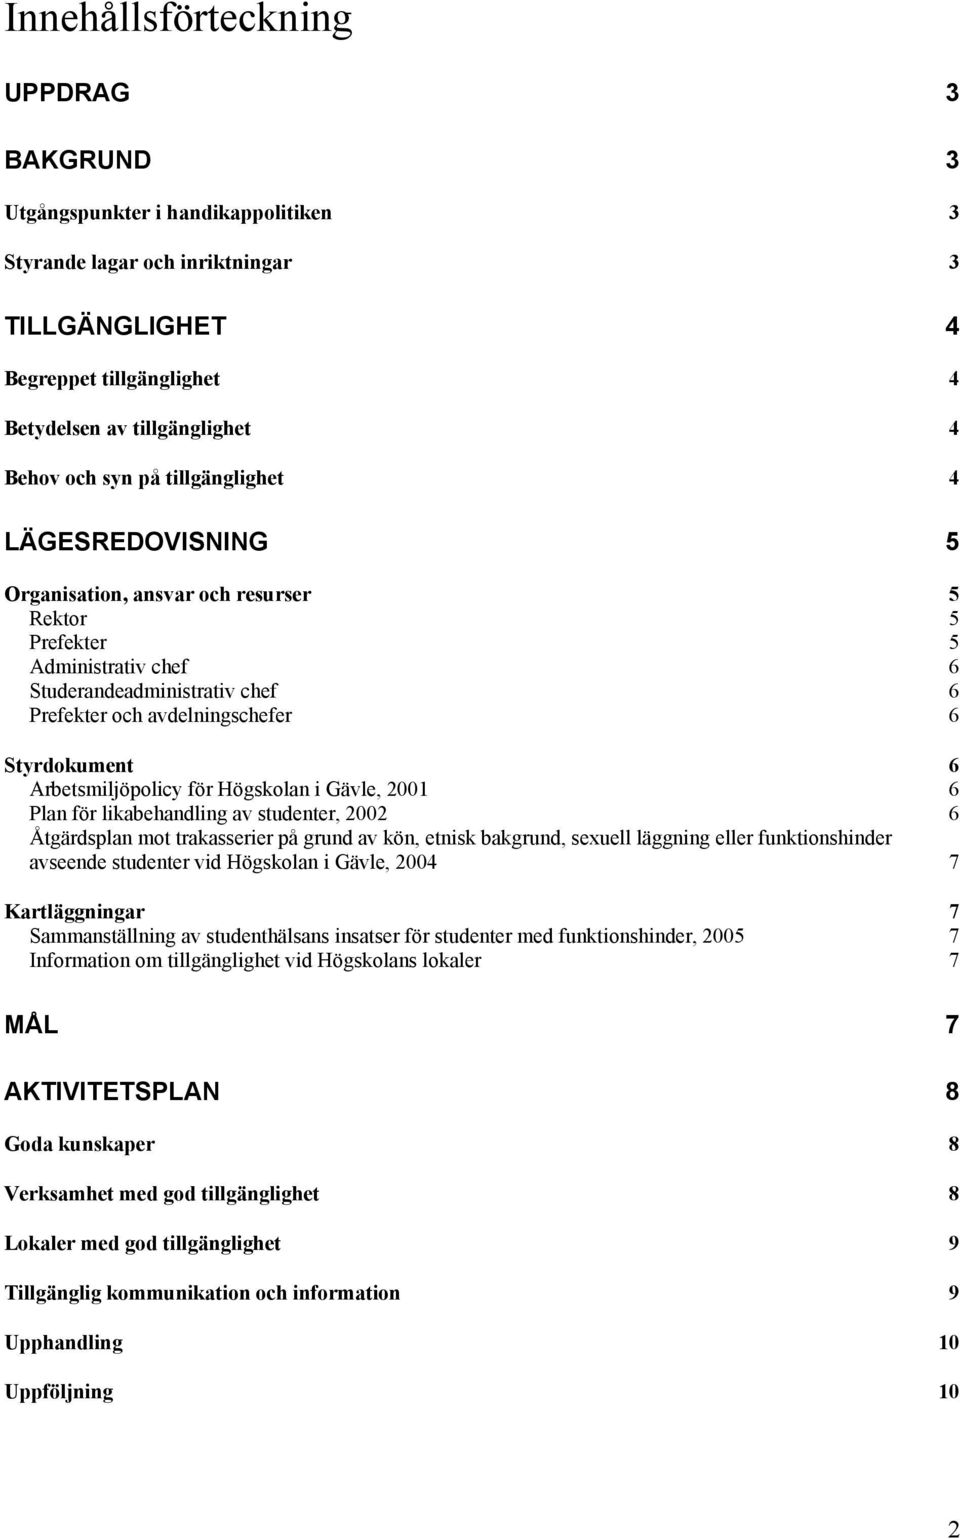 Arbetsmiljöpolicy för Högskolan i Gävle, 2001 6 Plan för likabehandling av studenter, 2002 6 Åtgärdsplan mot trakasserier på grund av kön, etnisk bakgrund, sexuell läggning eller funktionshinder